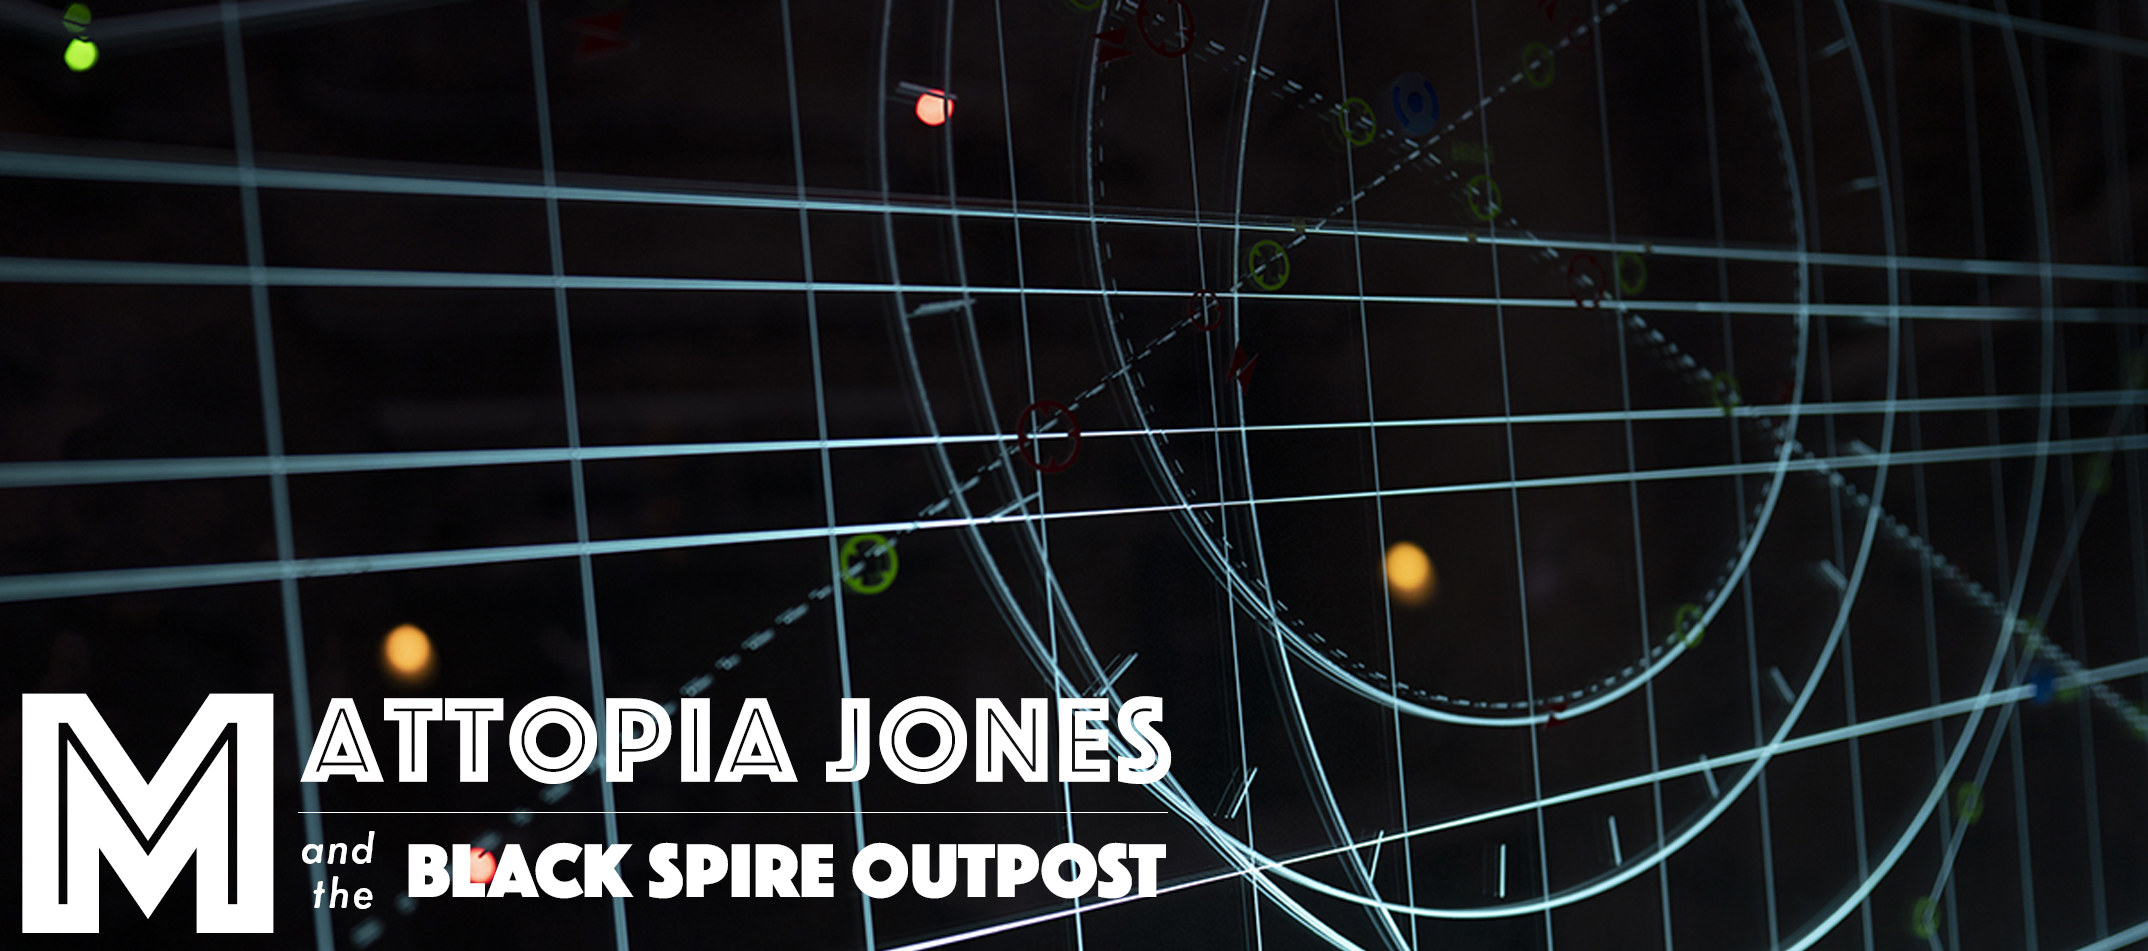 Mattopia Jones and the Black Spire Outpost